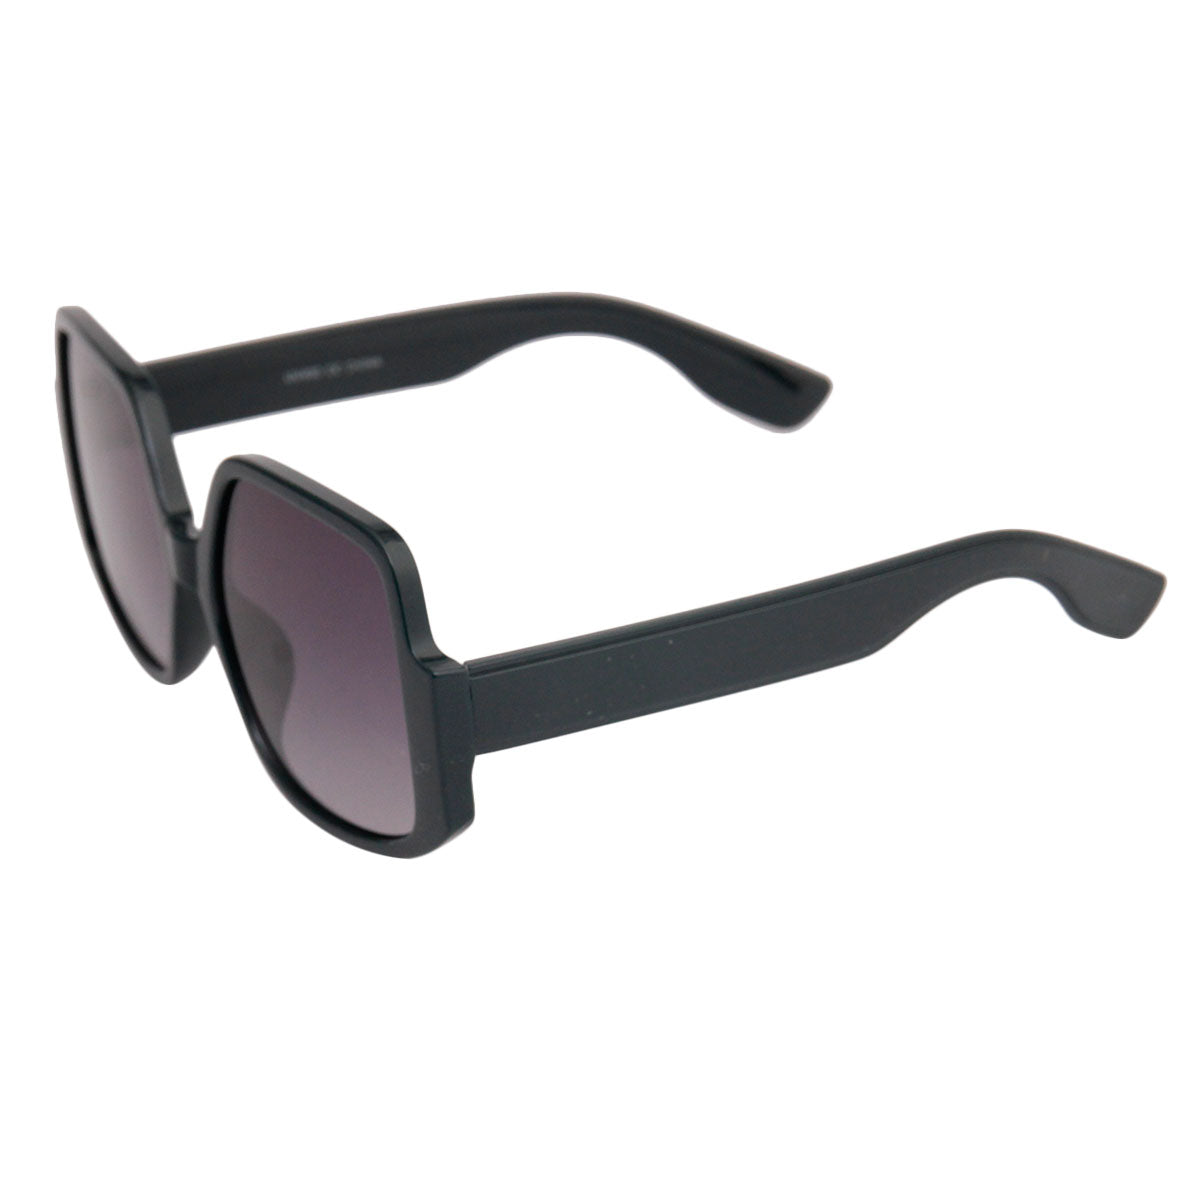 Retro Green Square Celine Style Sunglasses